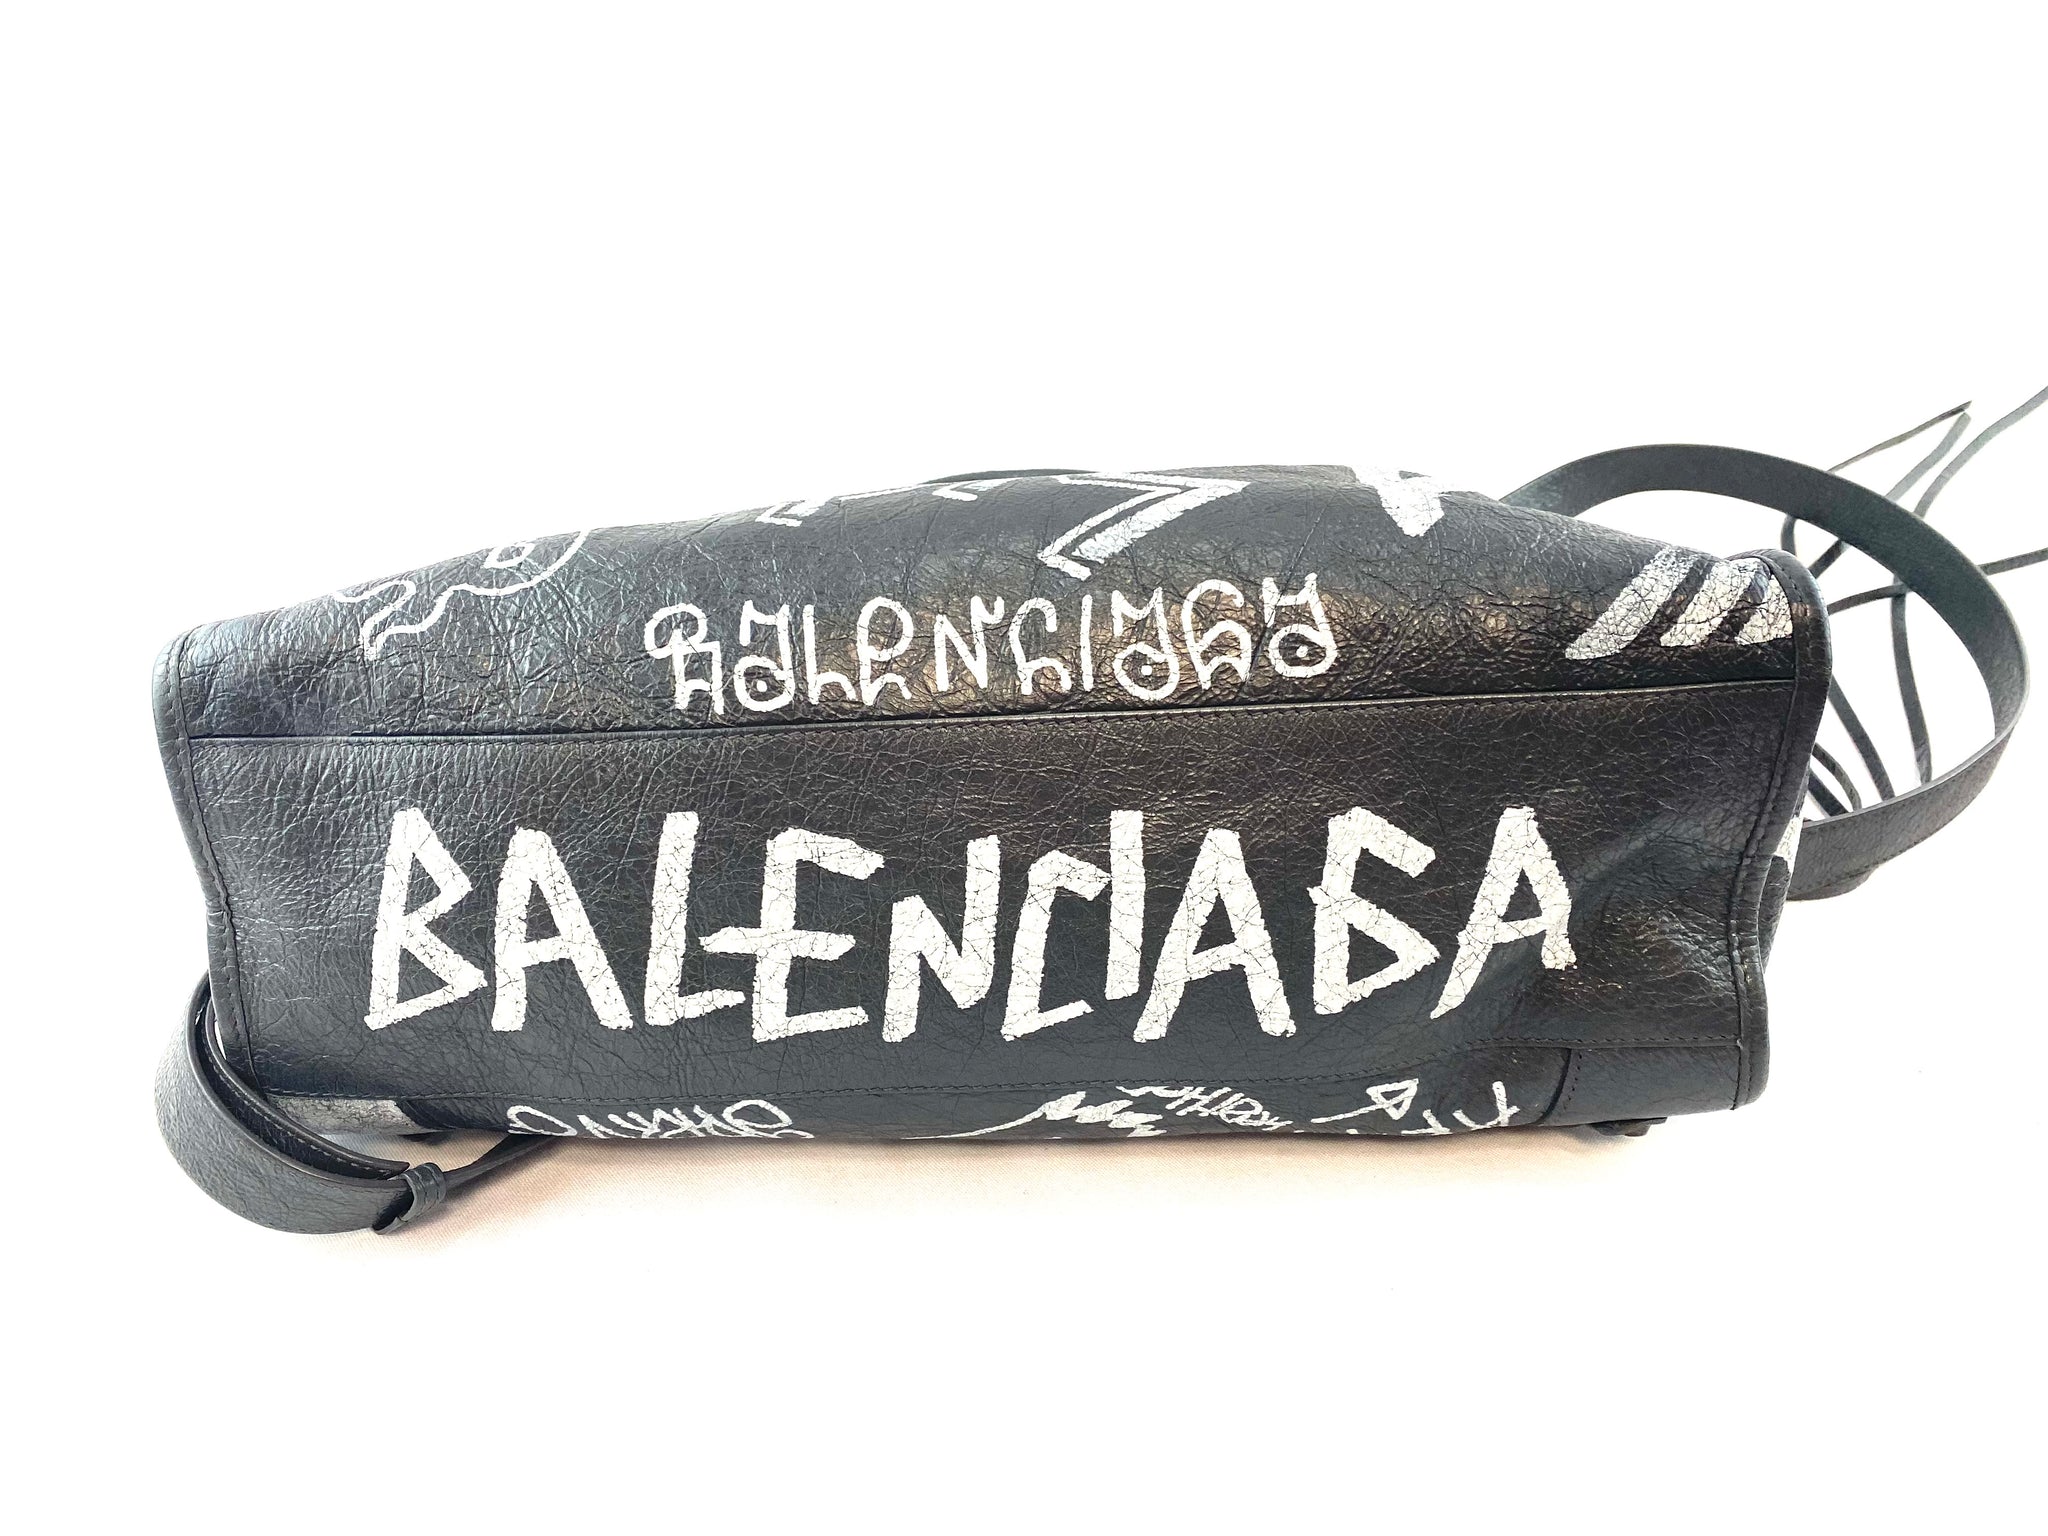 Balenciaga Graffiti City Bag – thankunext.us